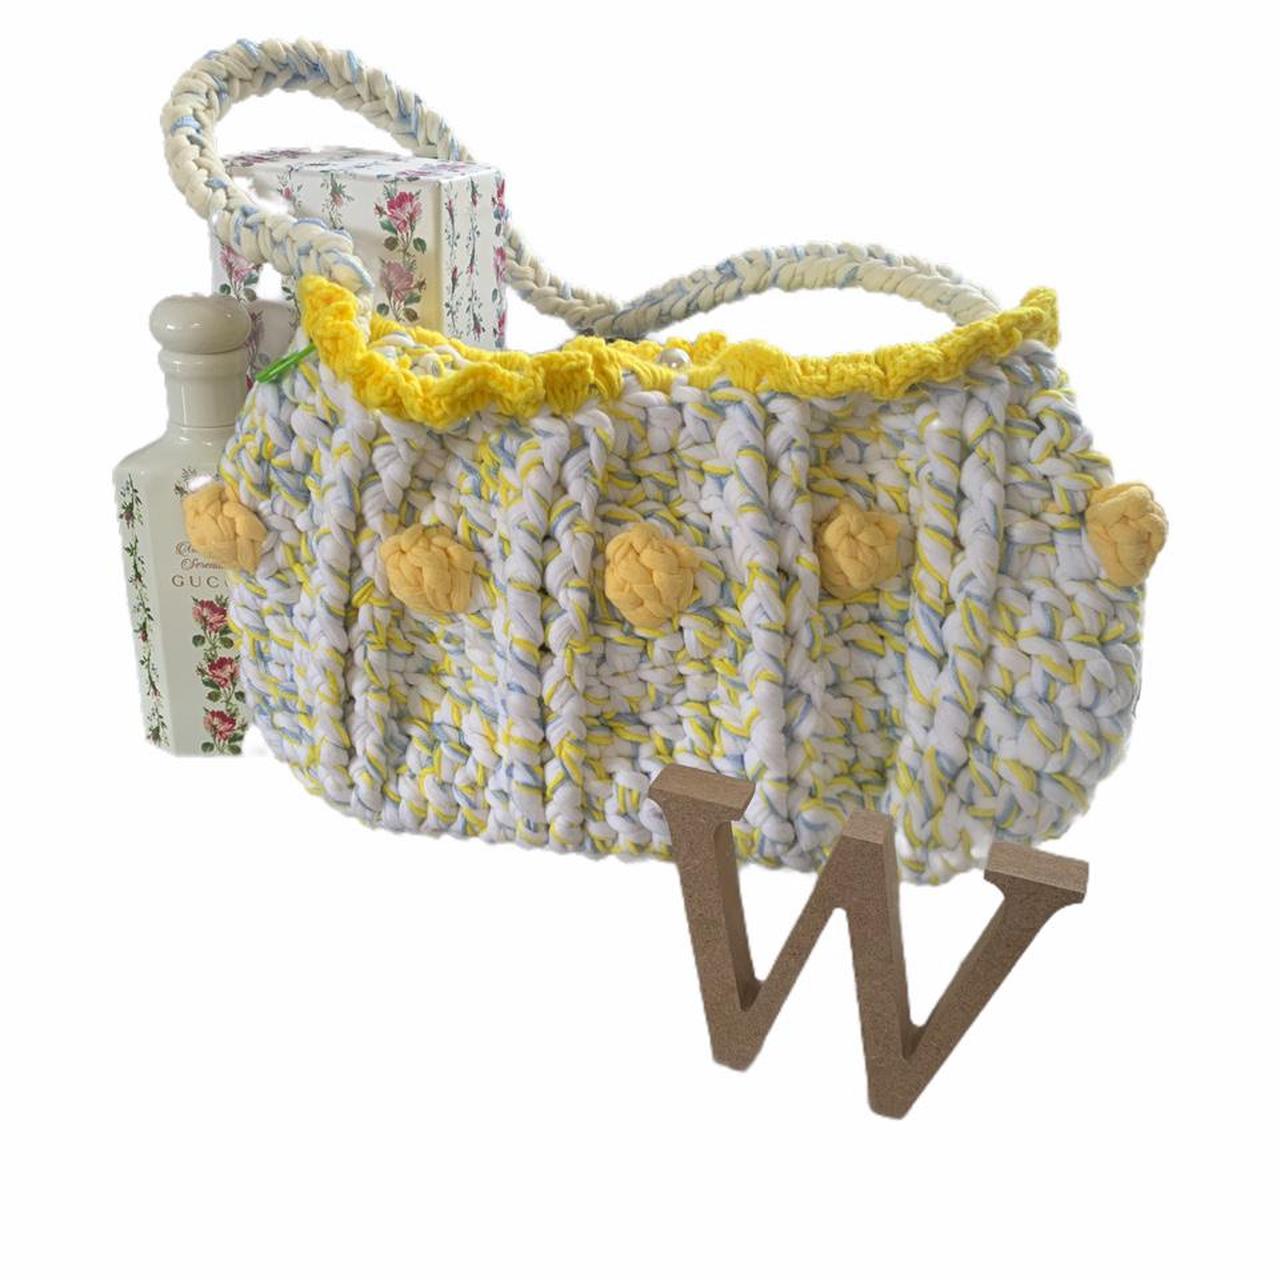 Product Image 1 - Crochet Dot Handbag🧶

Free Postage✨
-Royal Mail